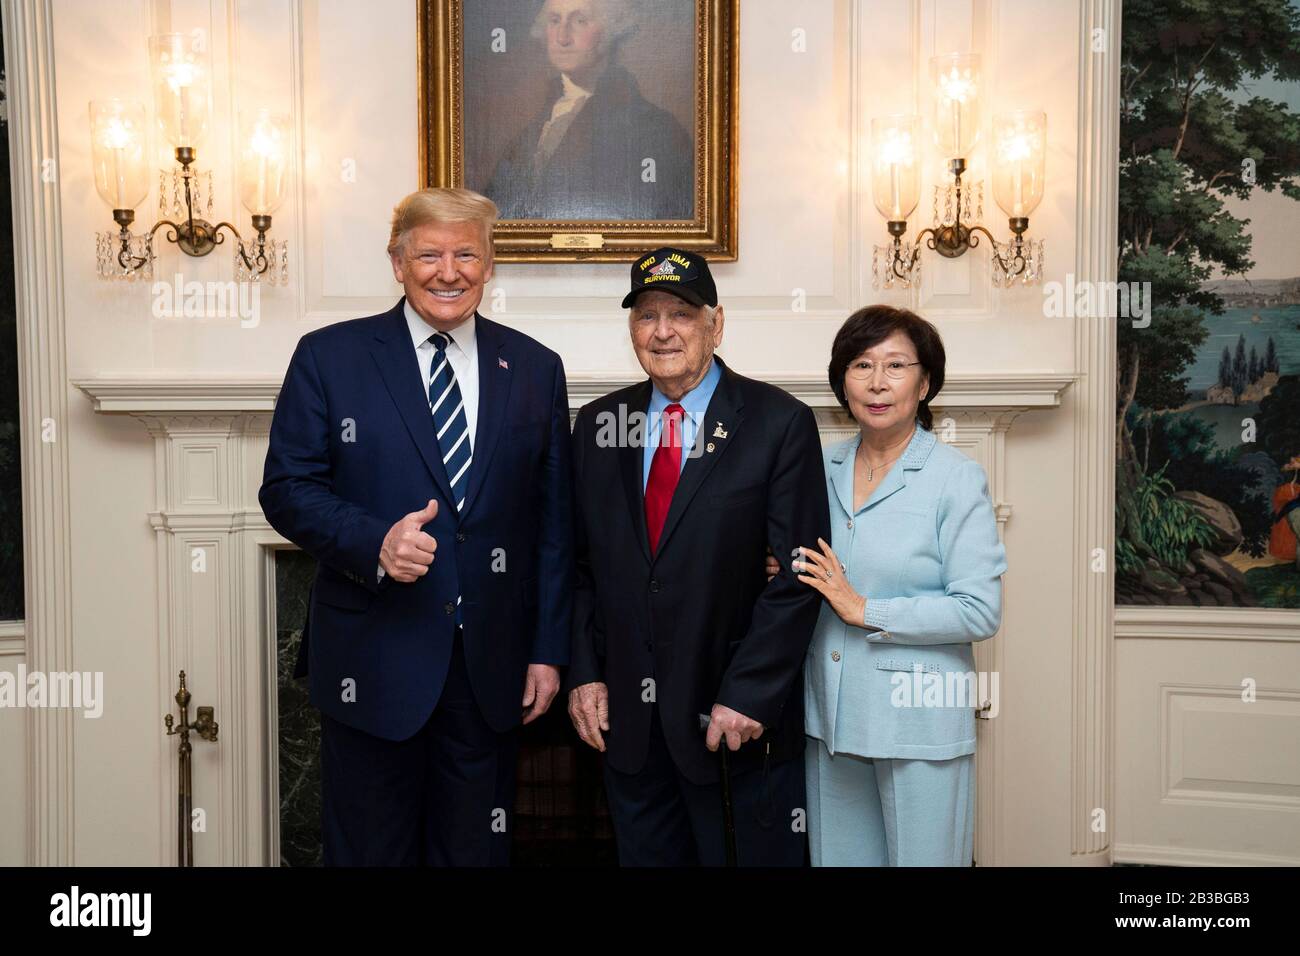 Le président américain Donald Trump pose avec la seconde Guerre mondiale, vétéran de la bataille d'Iwo Jima, Ira Rigger, 97 ans, et sa femme, Yong Rigger, dans la salle d'accueil diplomatique de la Maison Blanche le 3 mars 2020 à Washington, DC. Banque D'Images